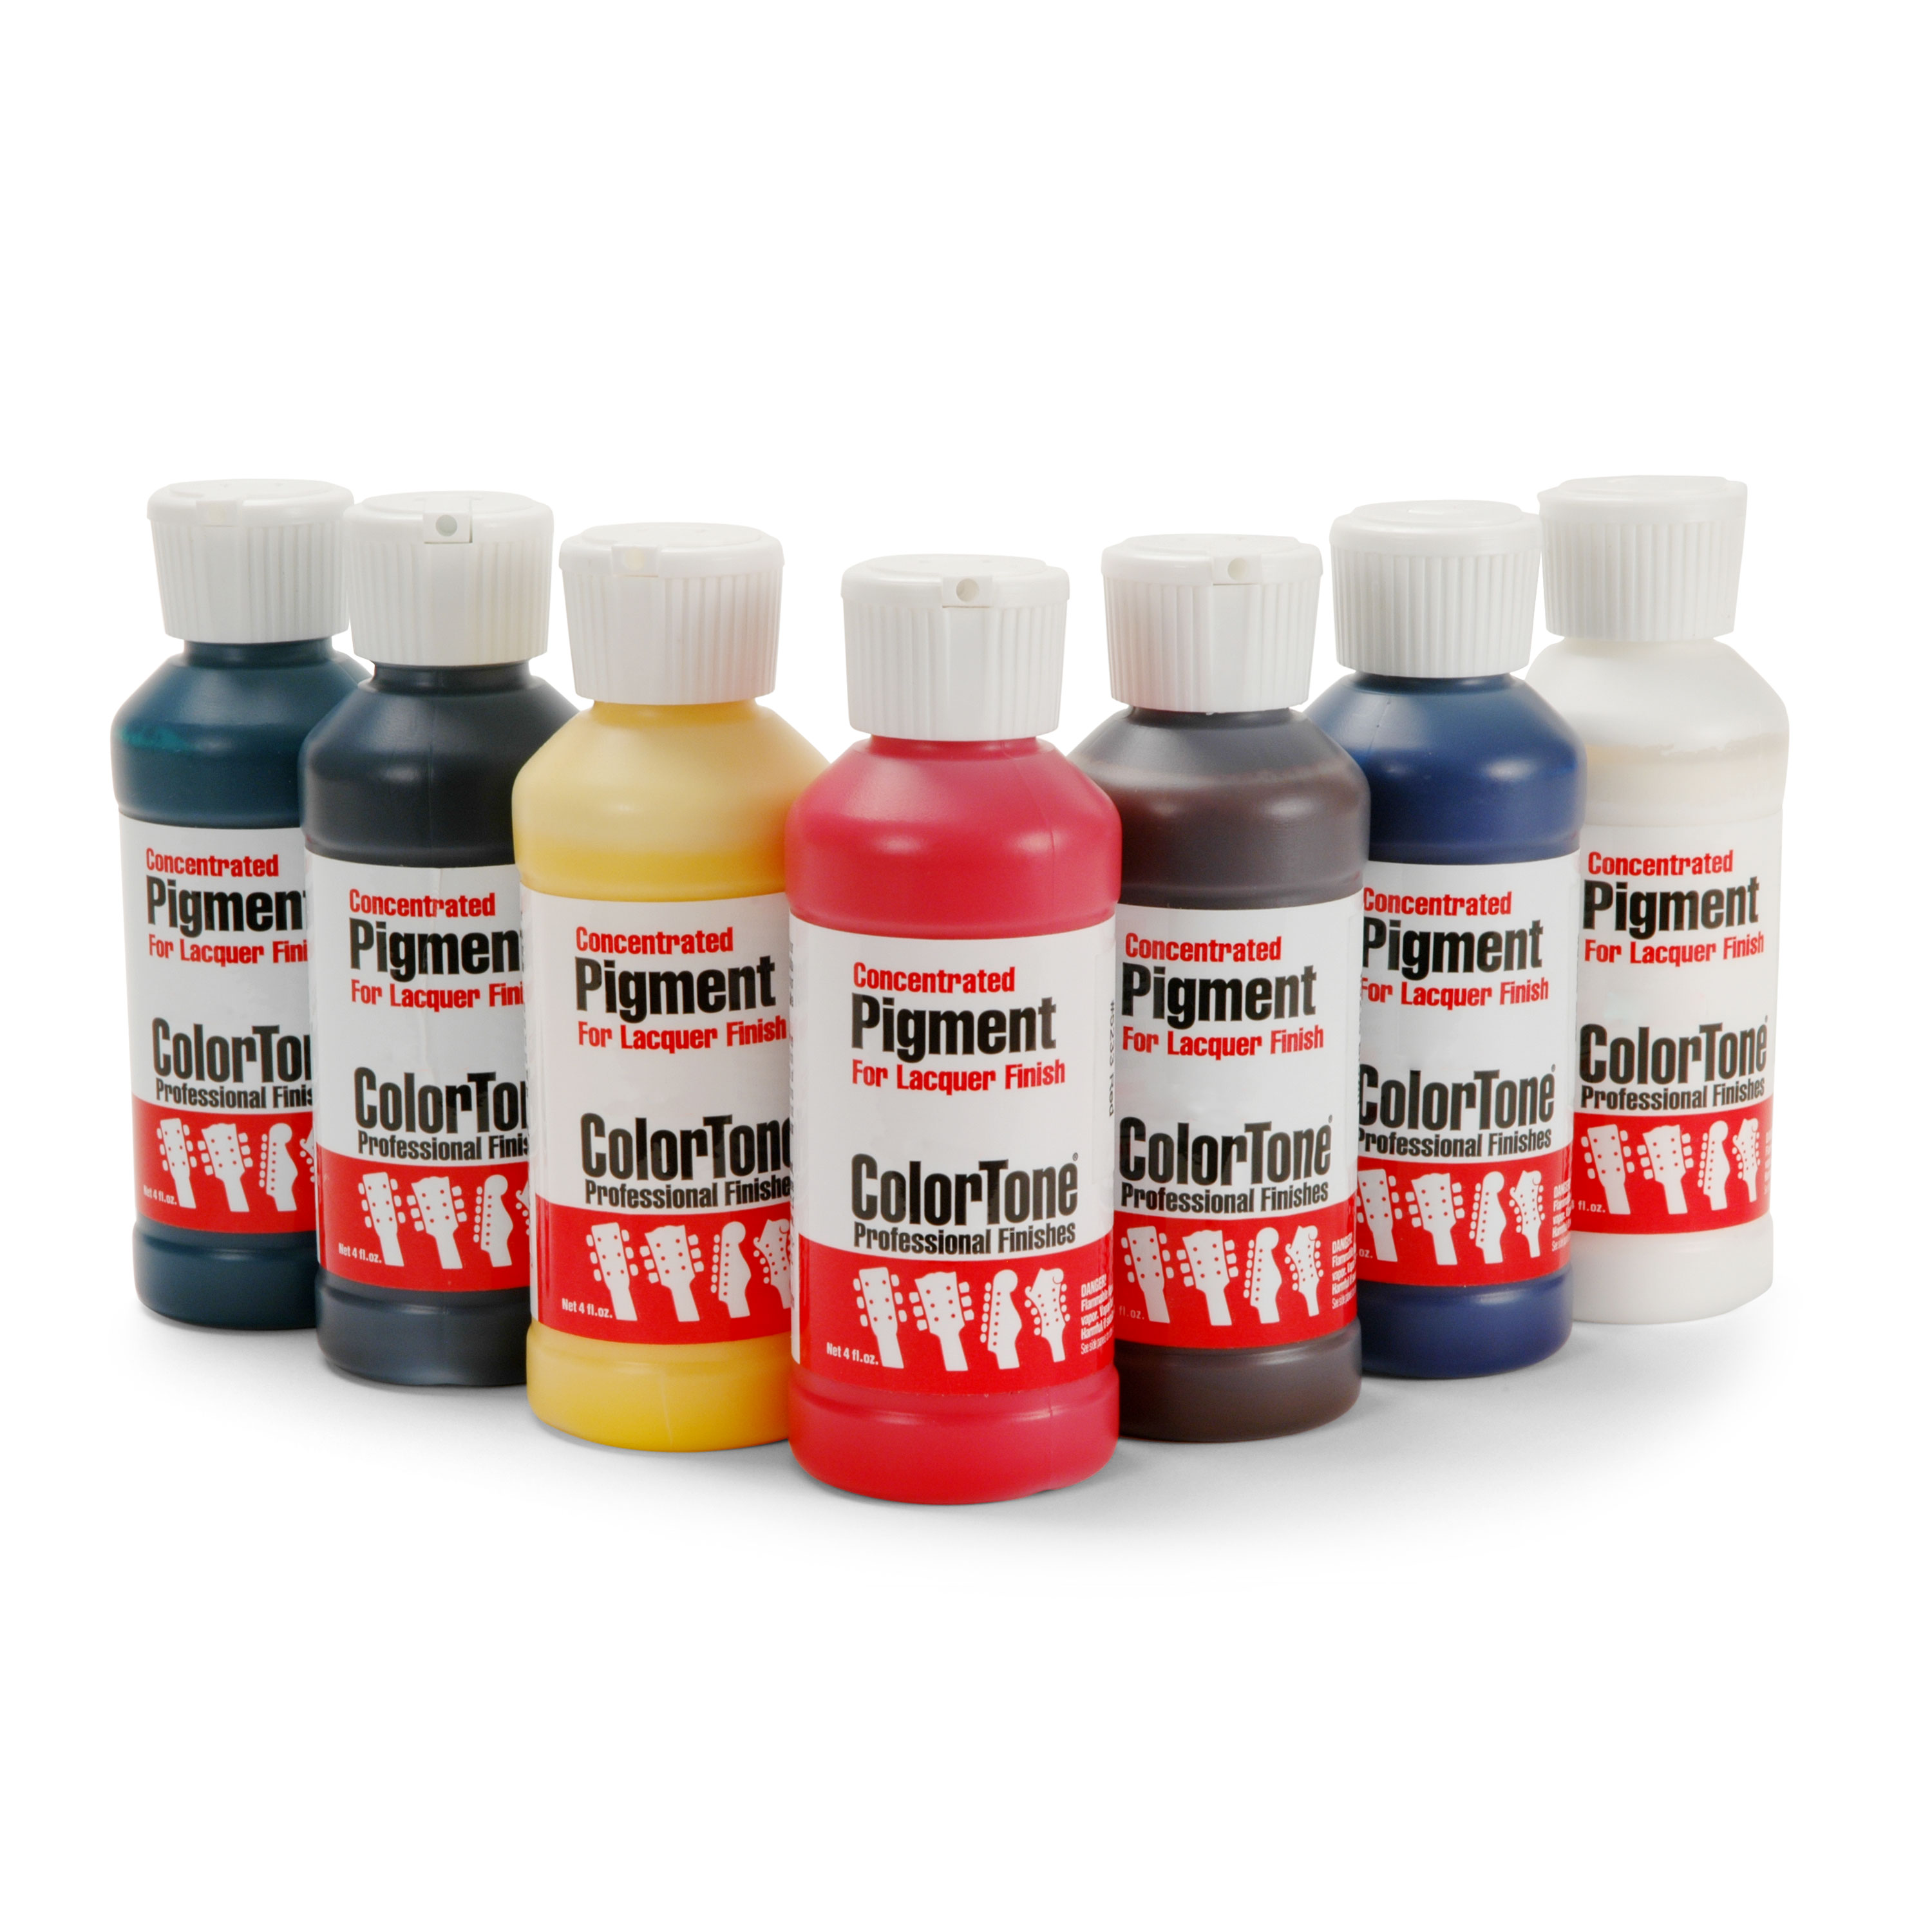 ColorTone Liquid Pigment for Lacquer